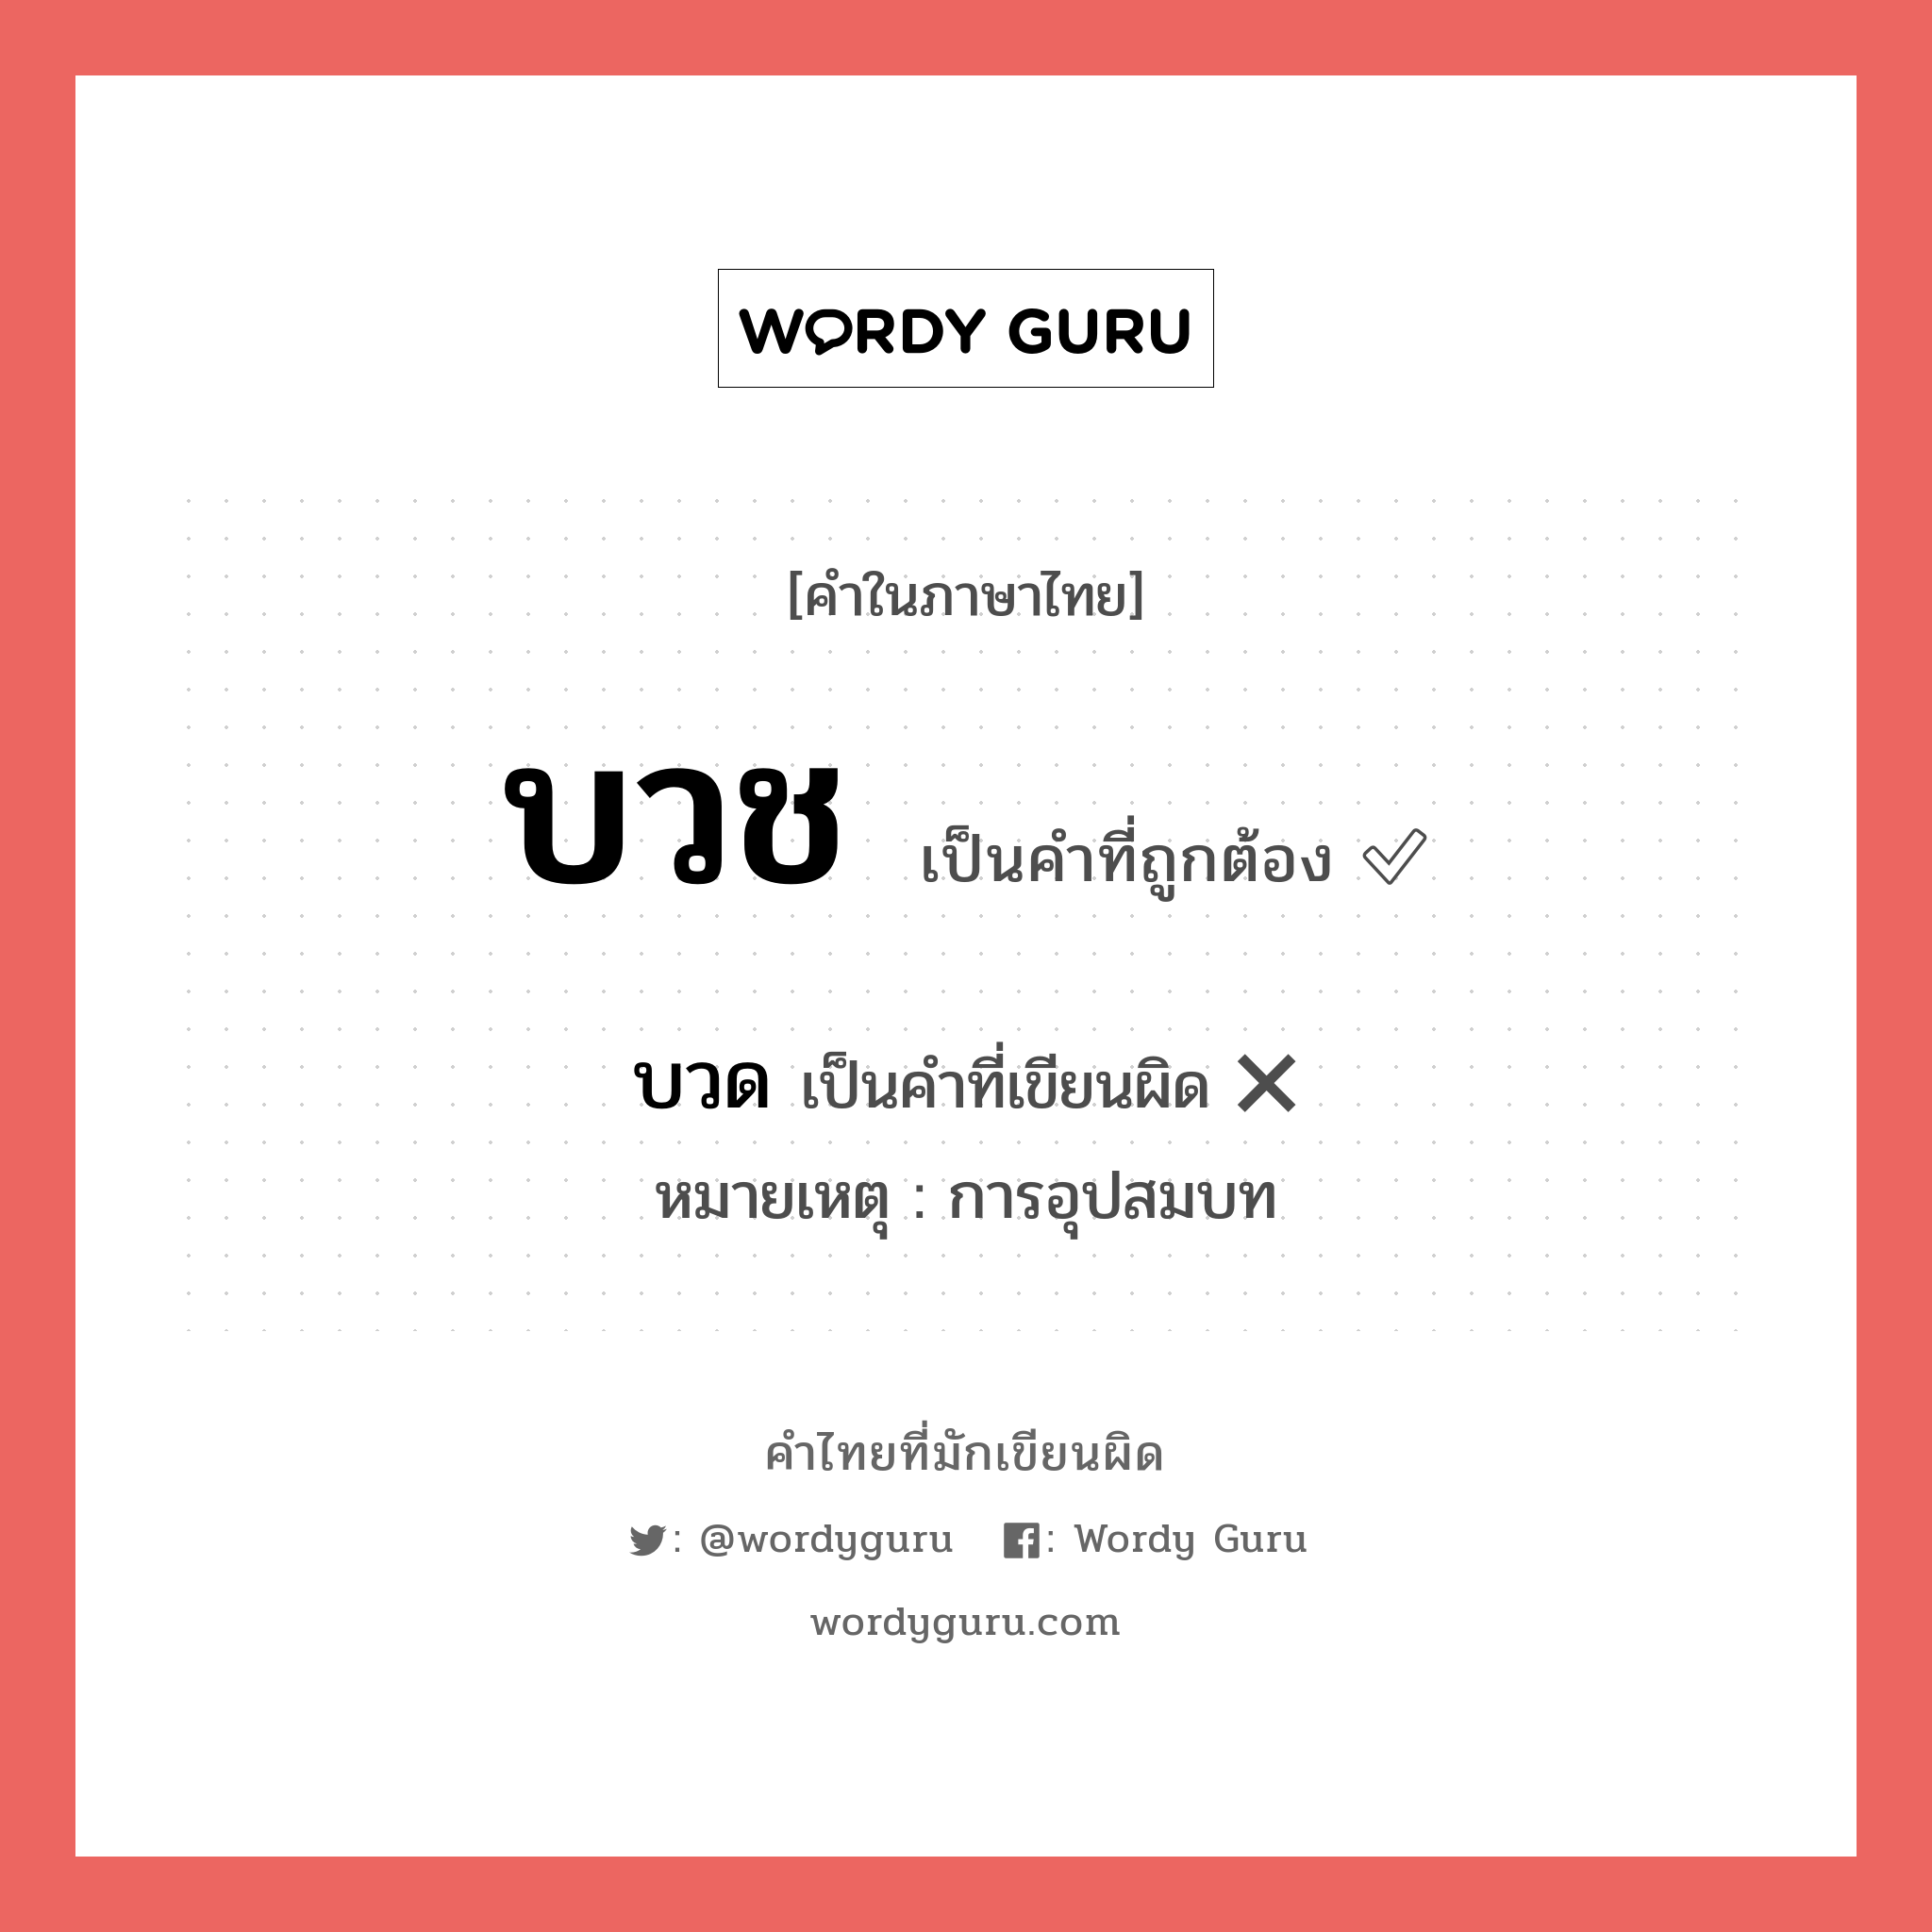 บวช หรือ บวด คำไหนเขียนถูก?, คำในภาษาไทยที่มักเขียนผิด บวช คำที่ผิด ❌ บวด หมายเหตุ การอุปสมบท